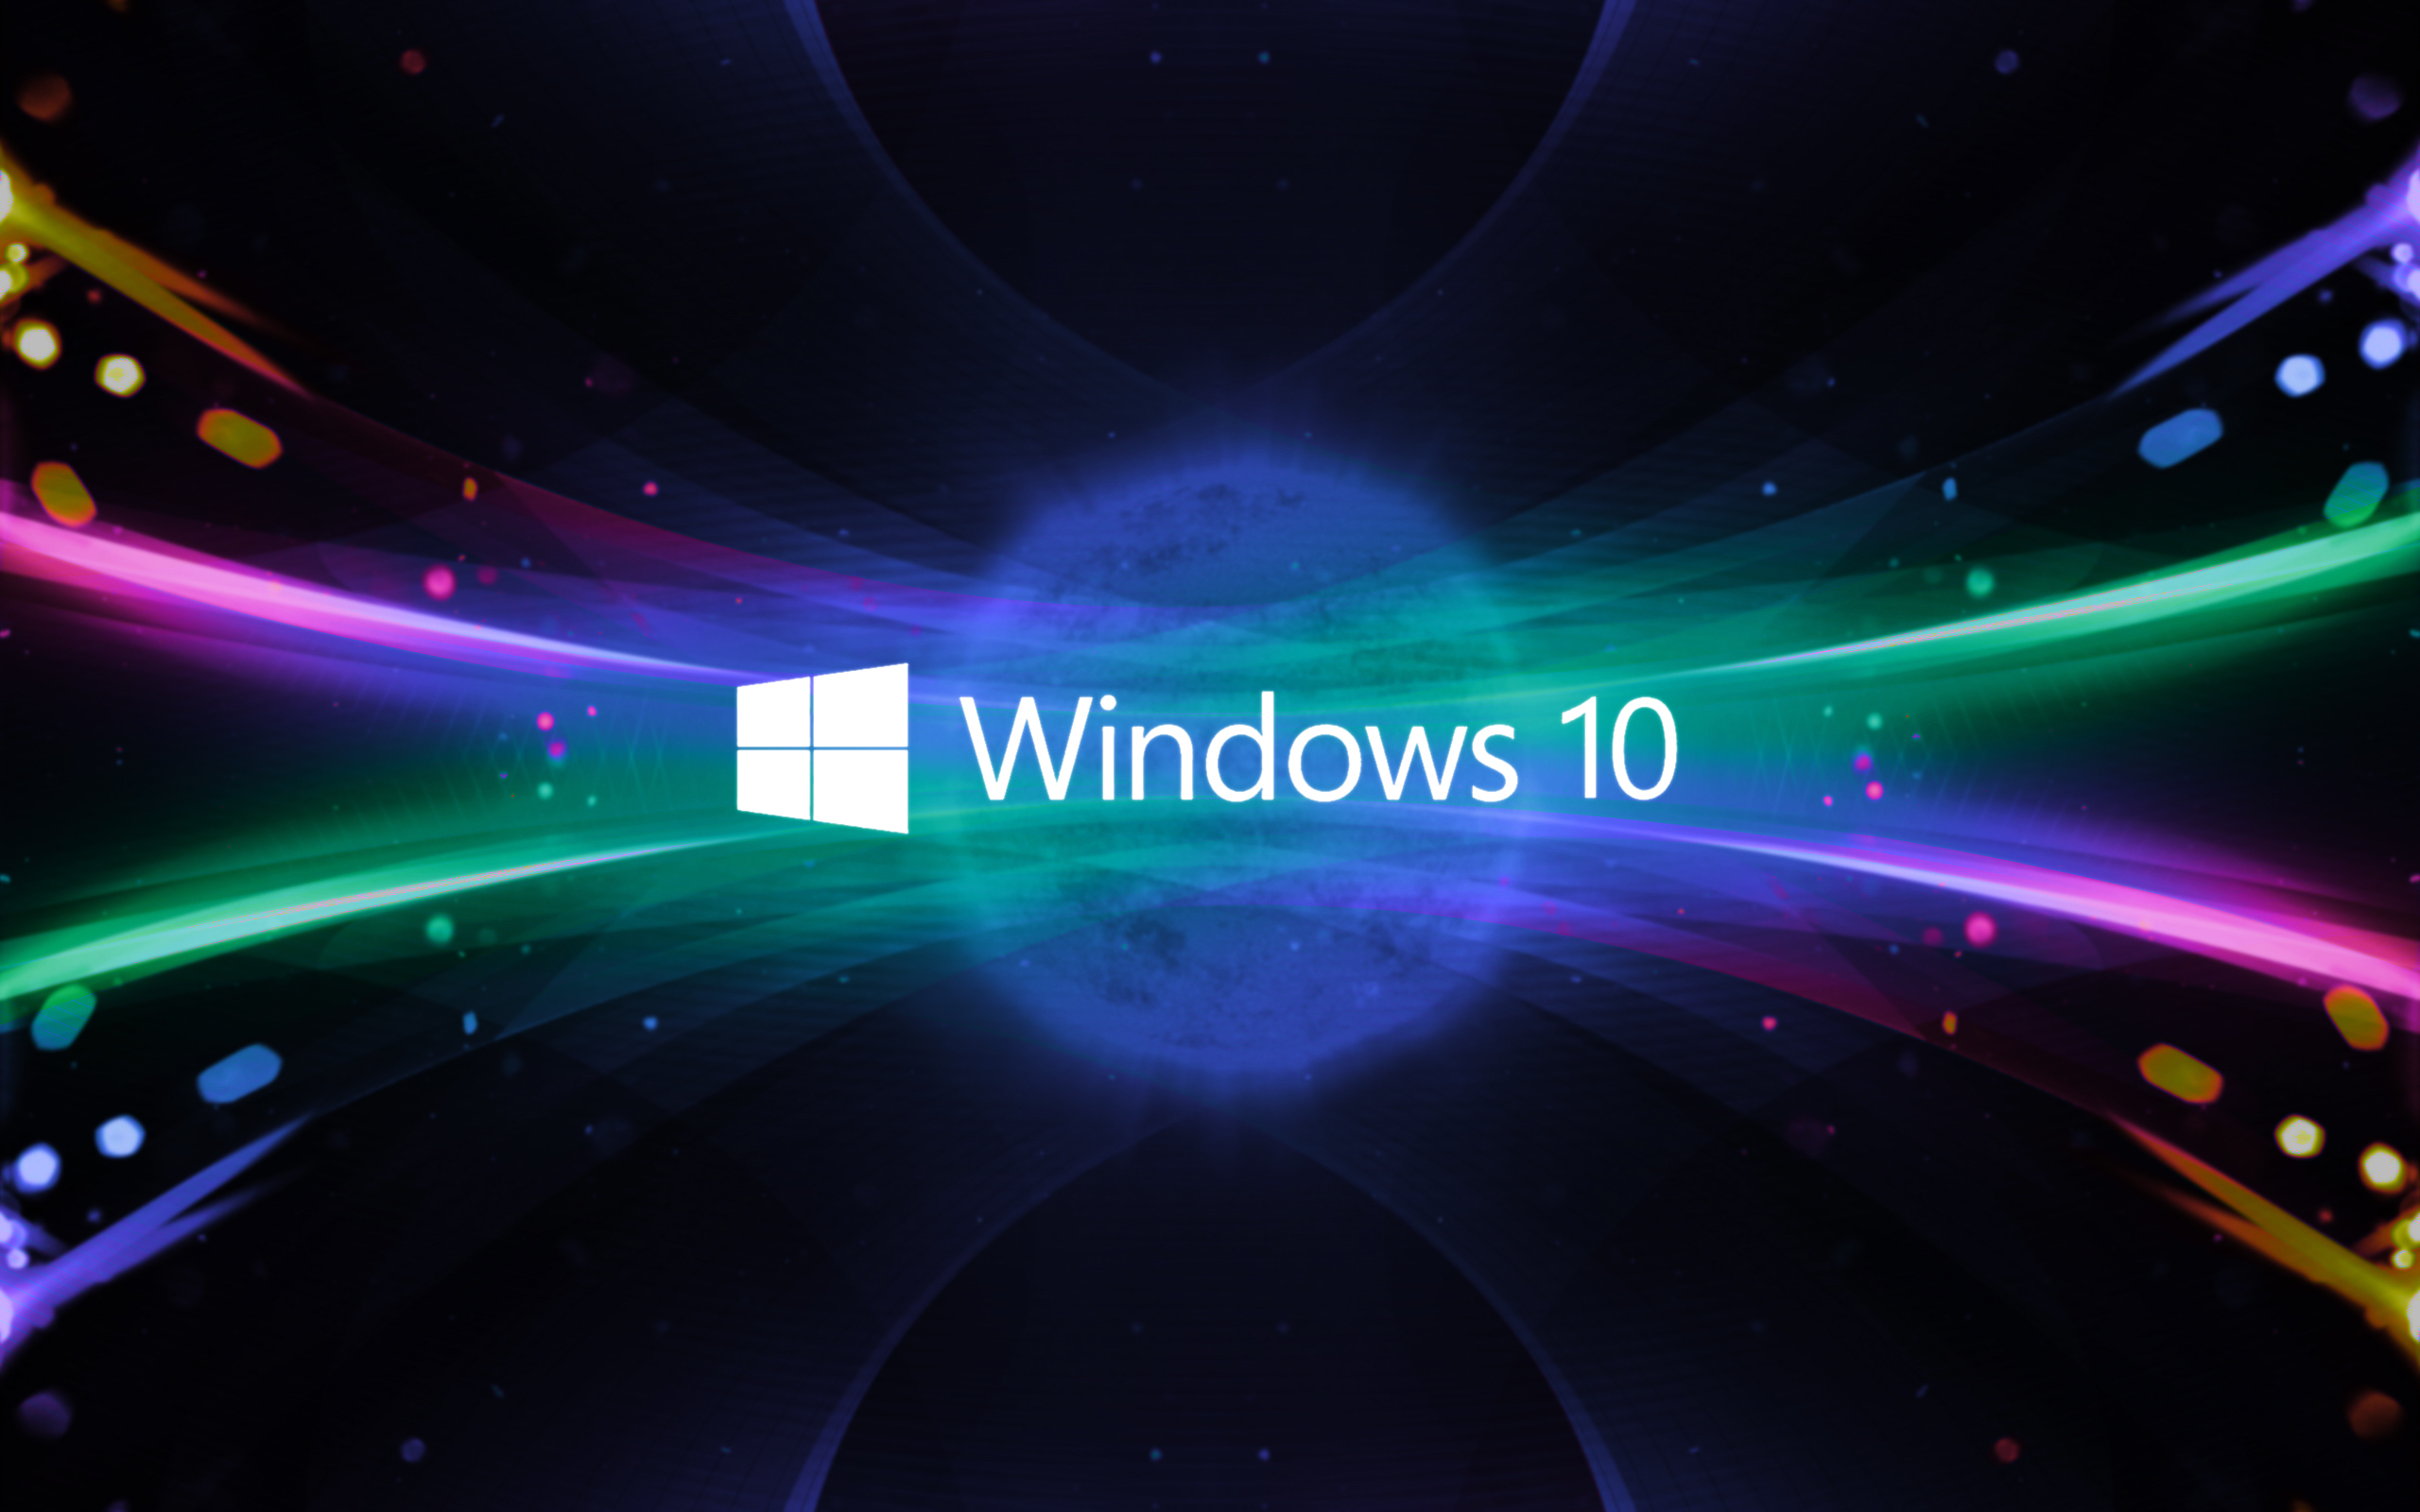 Reasons not to upgrade to Windows 10: Bạn đang cân nhắc việc nâng cấp lên Windows 10 nhưng lại muốn biết thêm về những lý do không nên nâng cấp? Hãy xem ngay hình ảnh liên quan để tìm hiểu rõ hơn về những rủi ro có thể gặp phải sau khi nâng cấp và cách giải quyết những vấn đề đó.